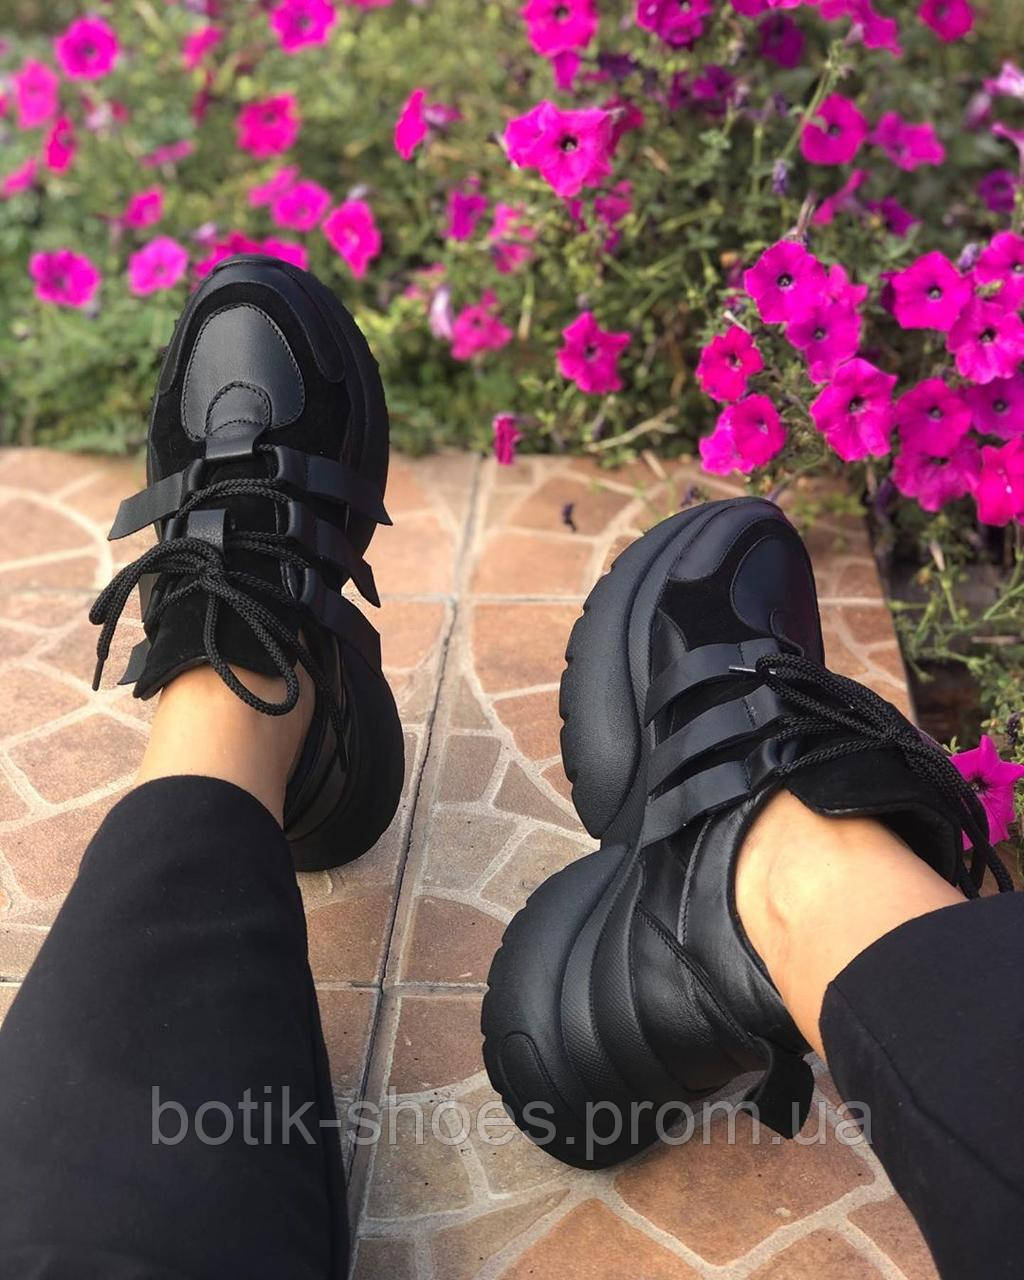 Кросівки шкіряні жіночі замшеві на платформі осінь-весна молодіжні стильні зручні комфортні чорні 39 розмір M.KraFVT 2142 2024